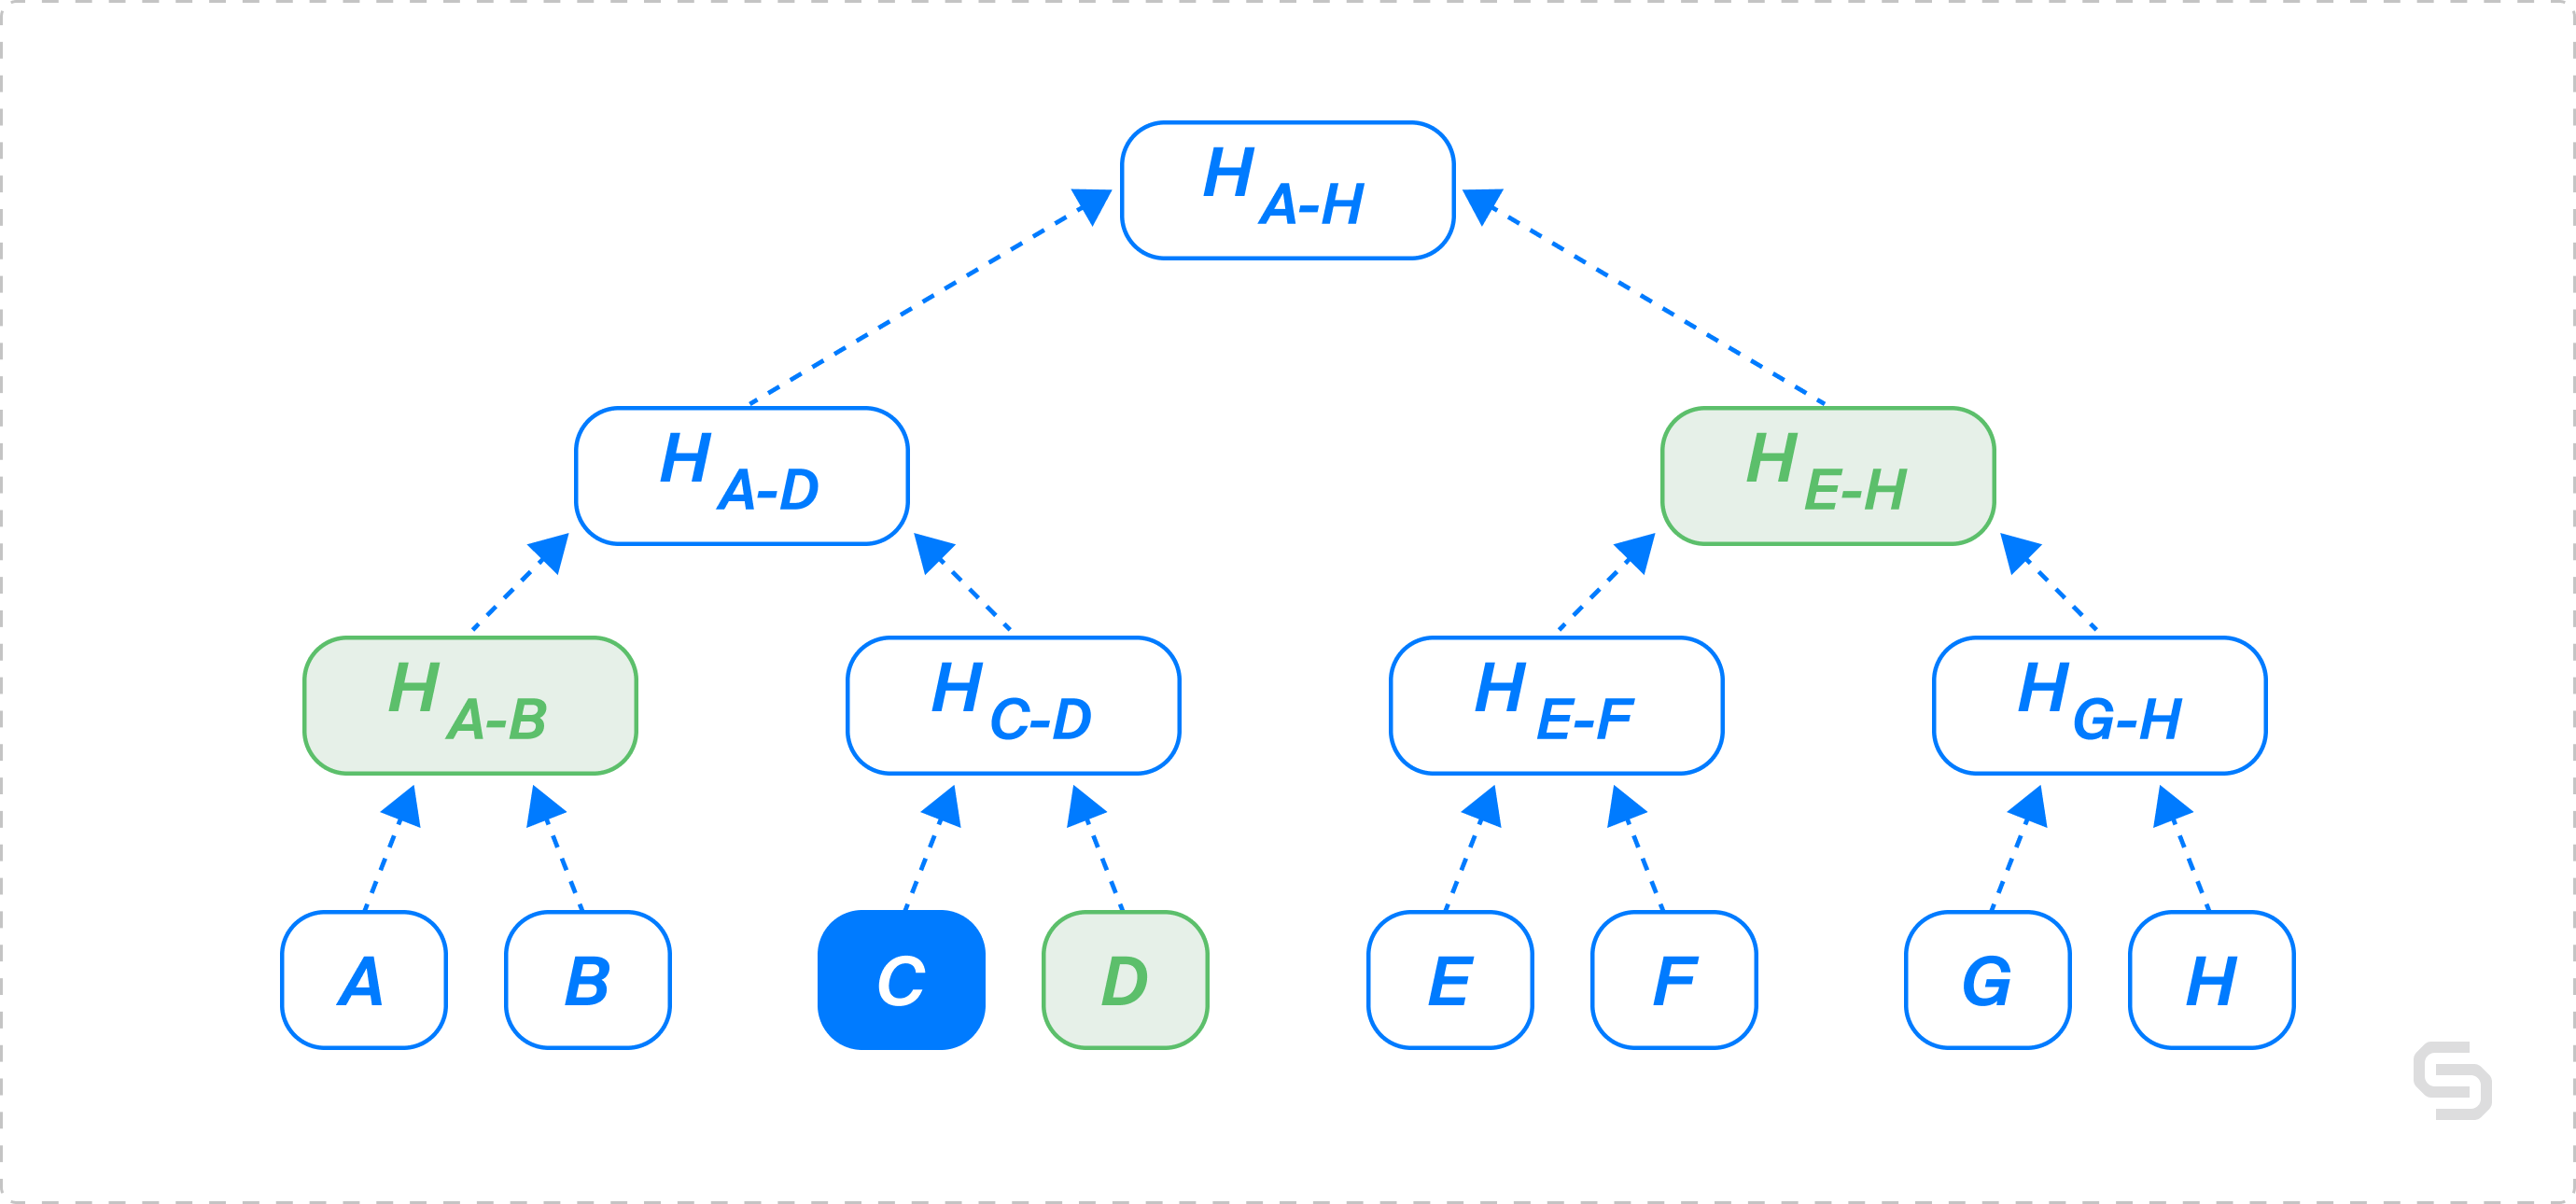 A simplified version of Merkle proof